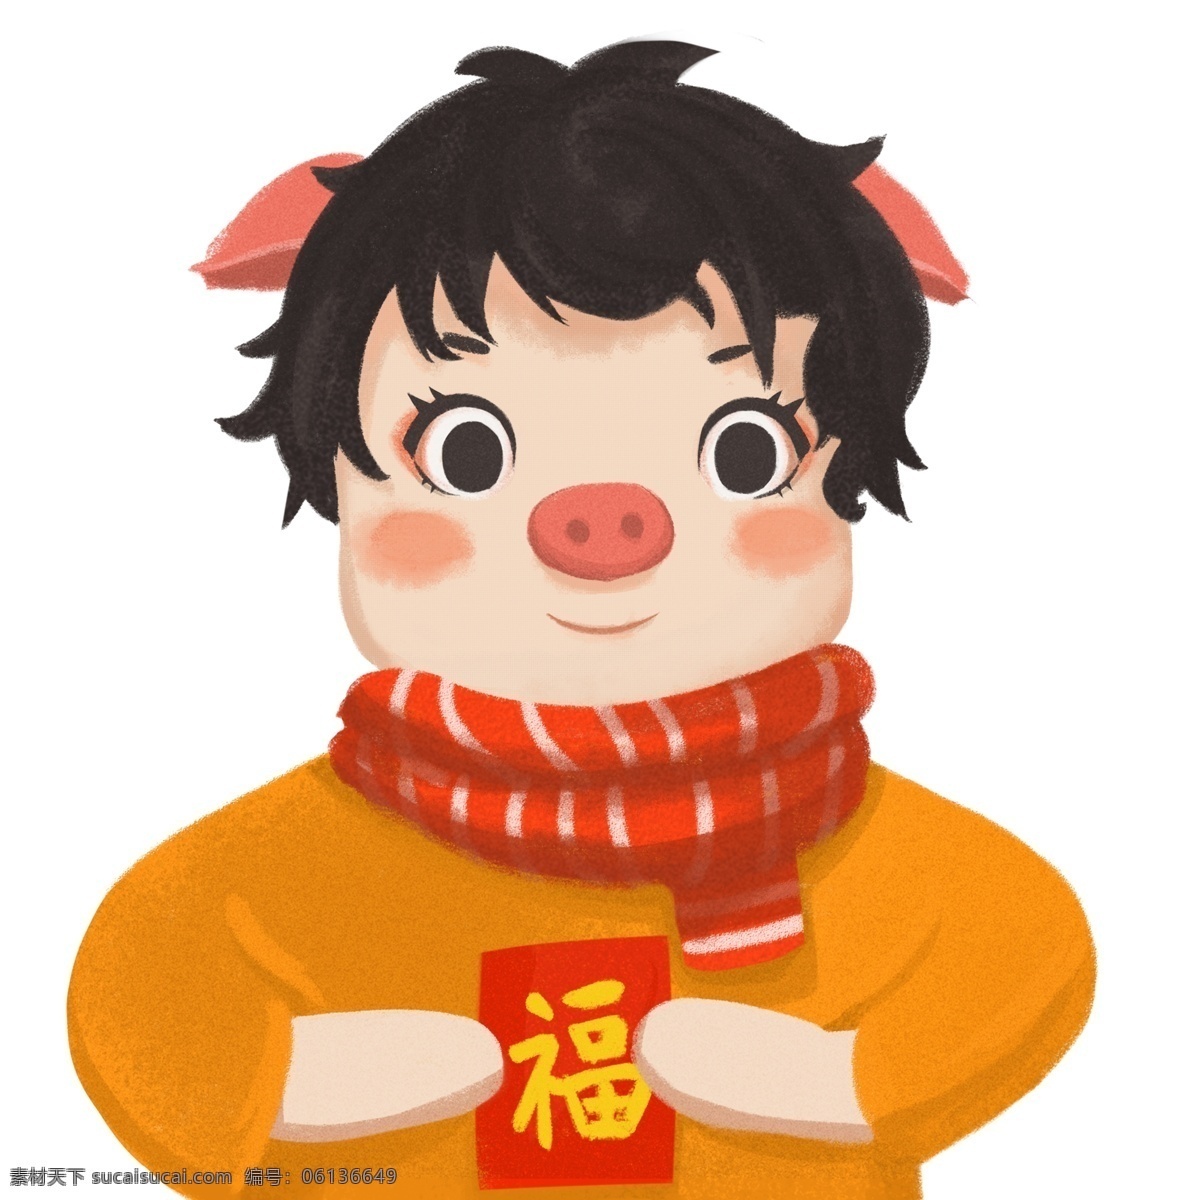 新年 送 红包 猪 卡通 喜庆 插画 福字 春节 手绘 猪年 小猪 男孩 新春 2019年 小猪形象 猪年形象